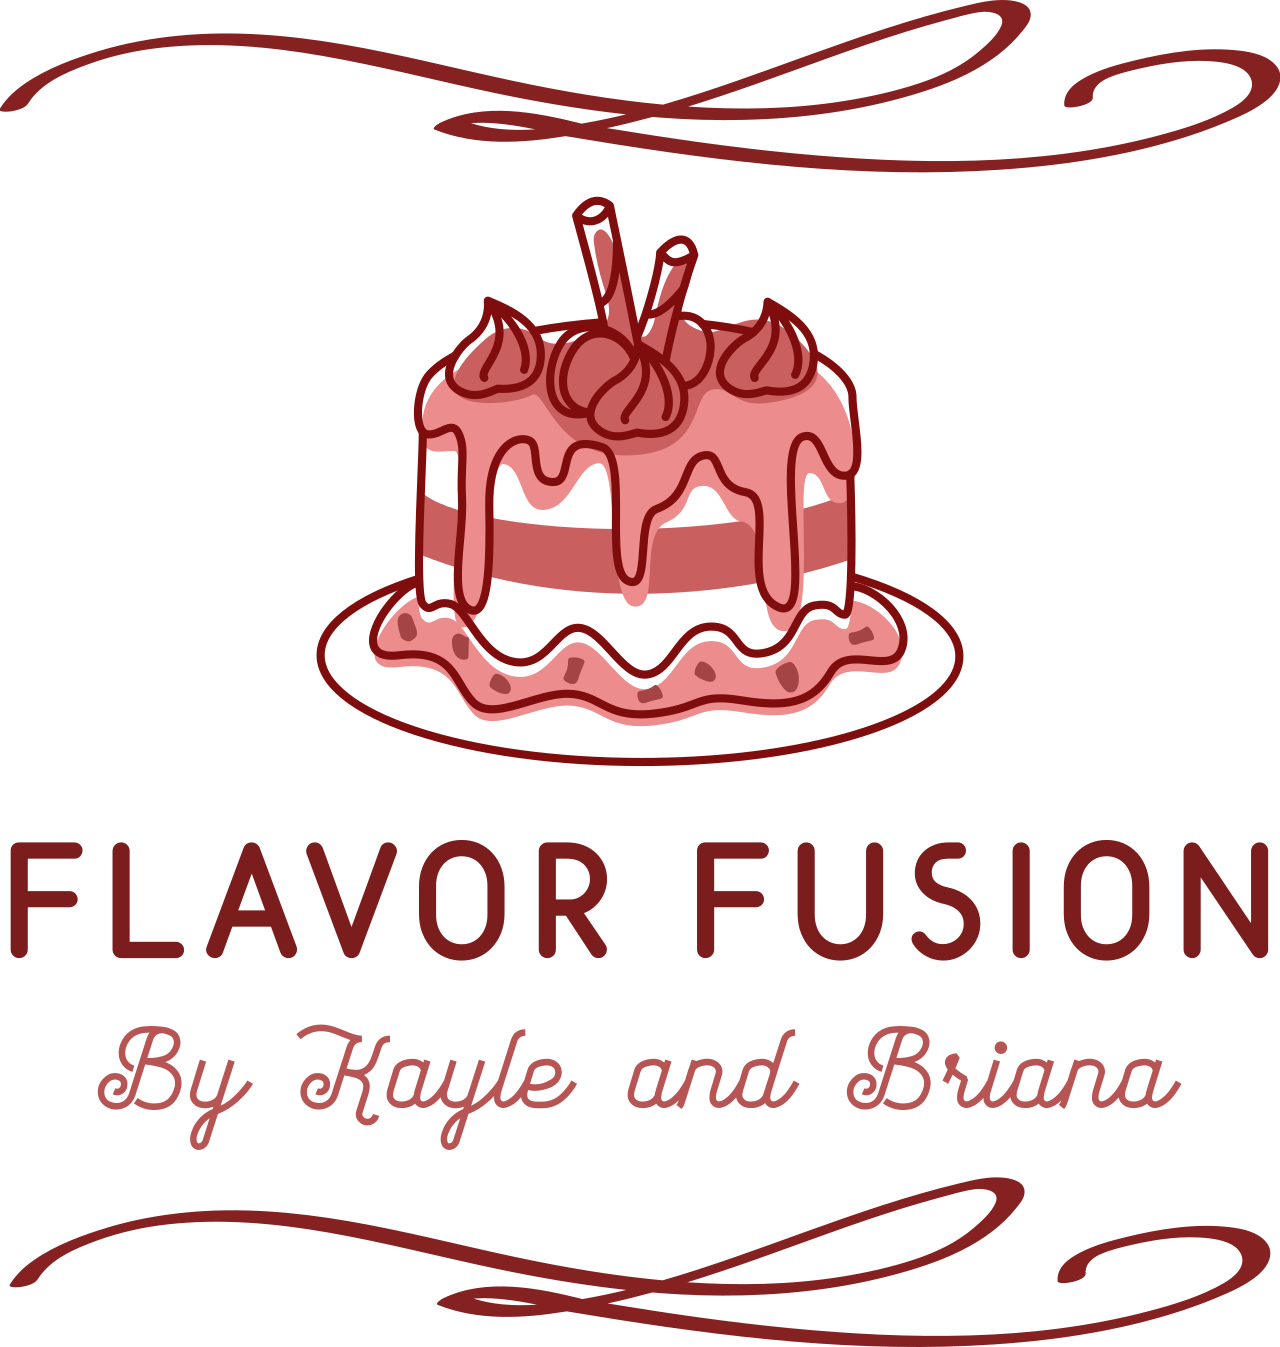 Flavor Fusion's logo